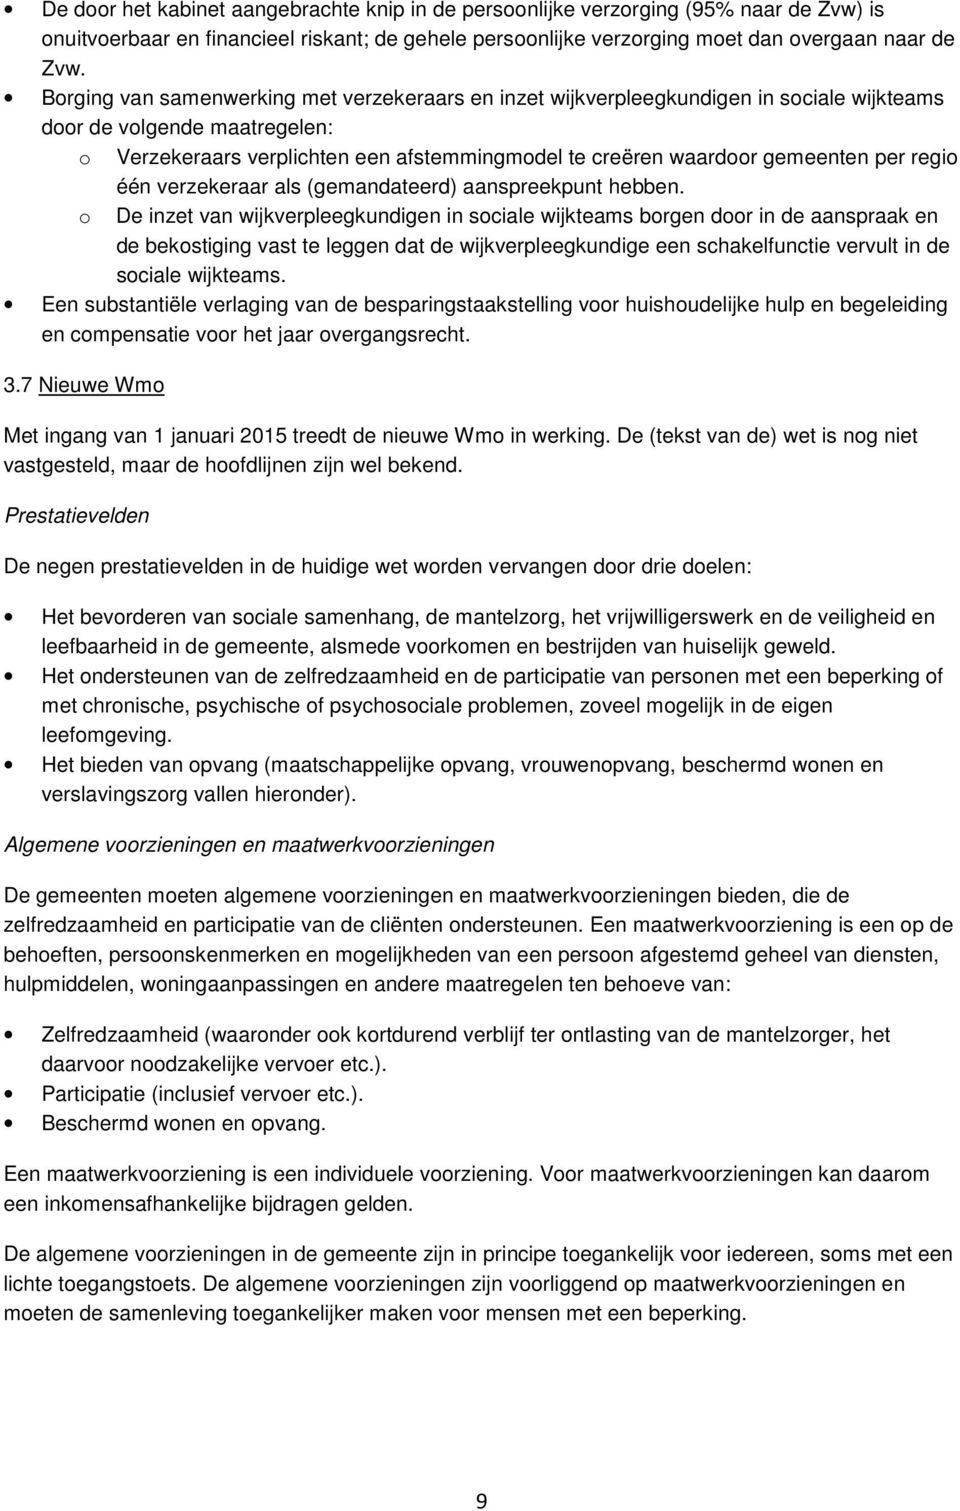 per regio één verzekeraar als (gemandateerd) aanspreekpunt hebben.